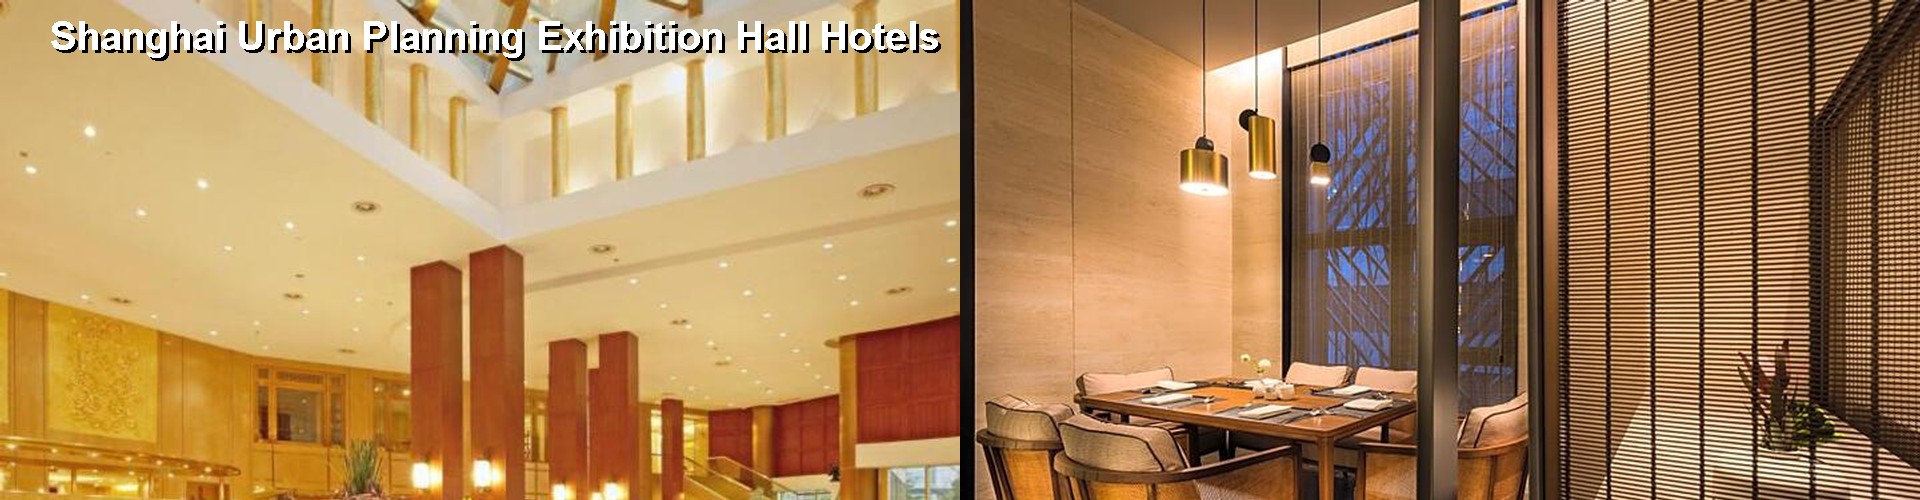 5 Best Hotels near Shanghai Urban Planning Exhibition Hall